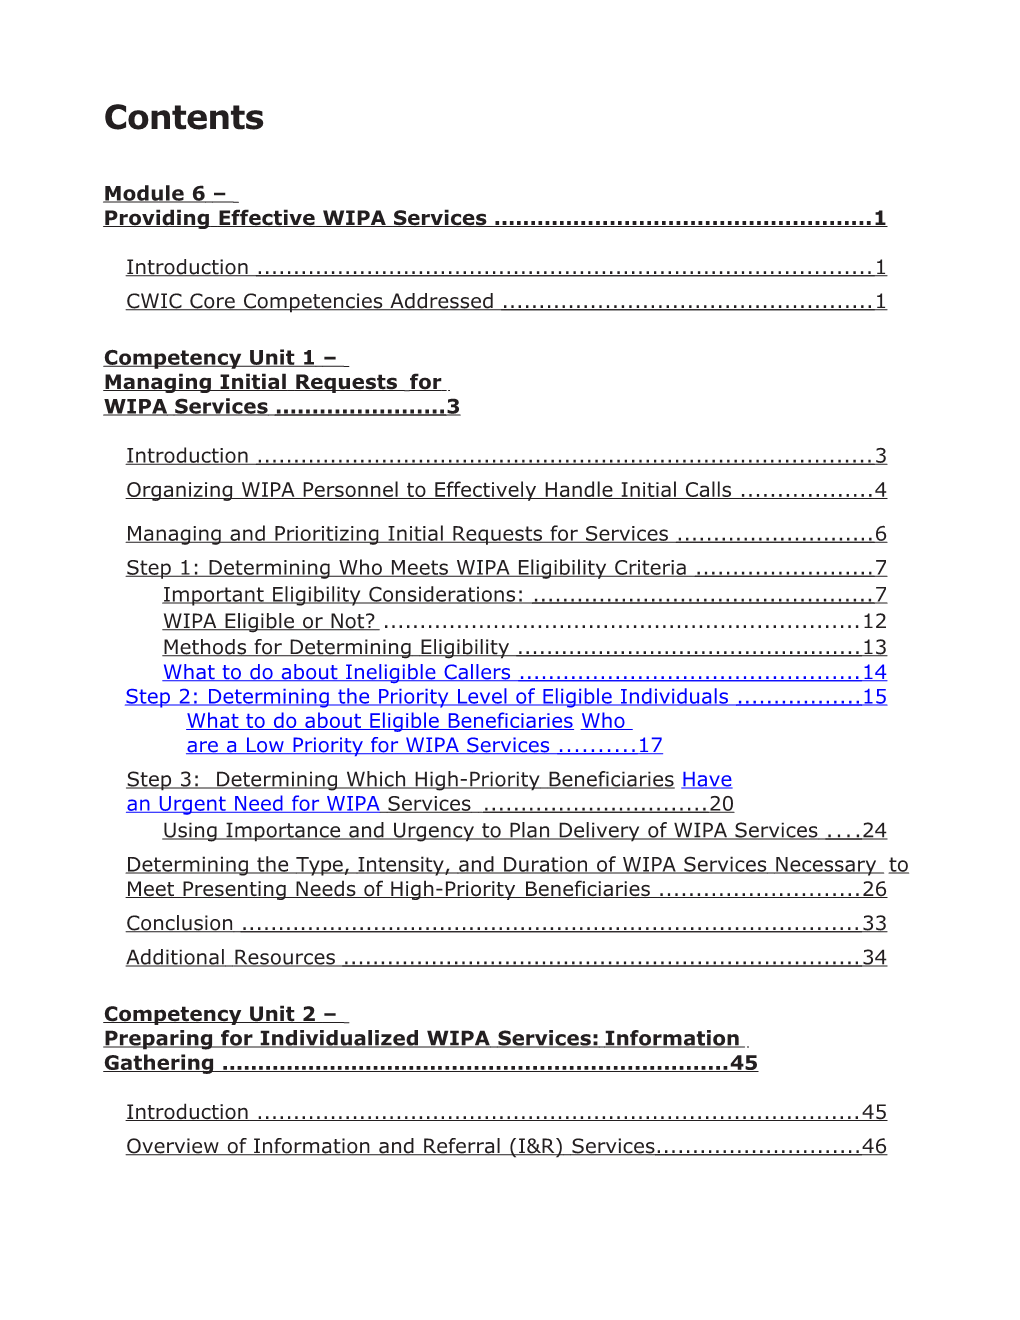 2016 WIPA Manual Module 6